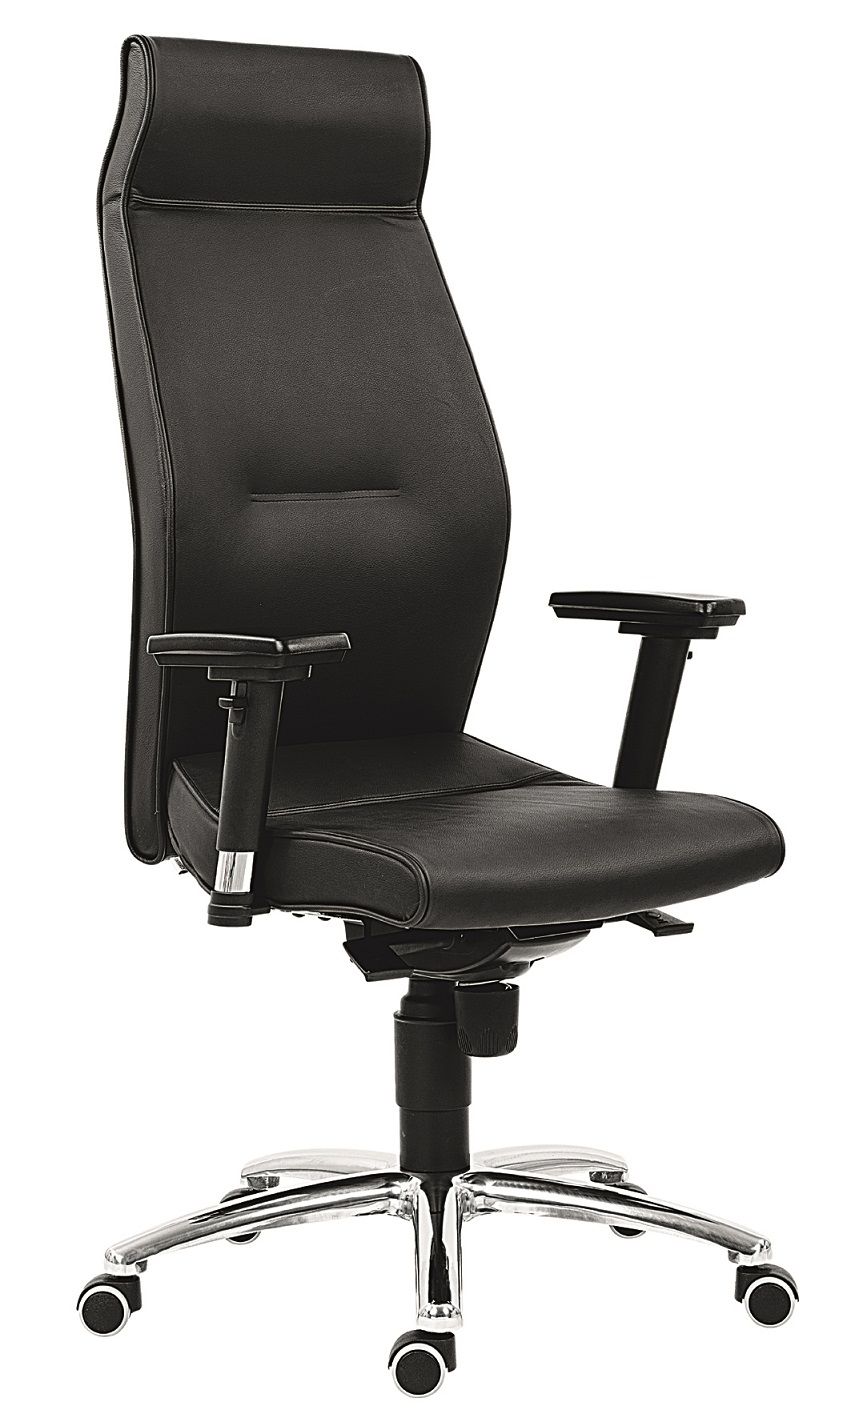 ANTARES kancelárska stolička 1800 LEI, zdravšie sedenie